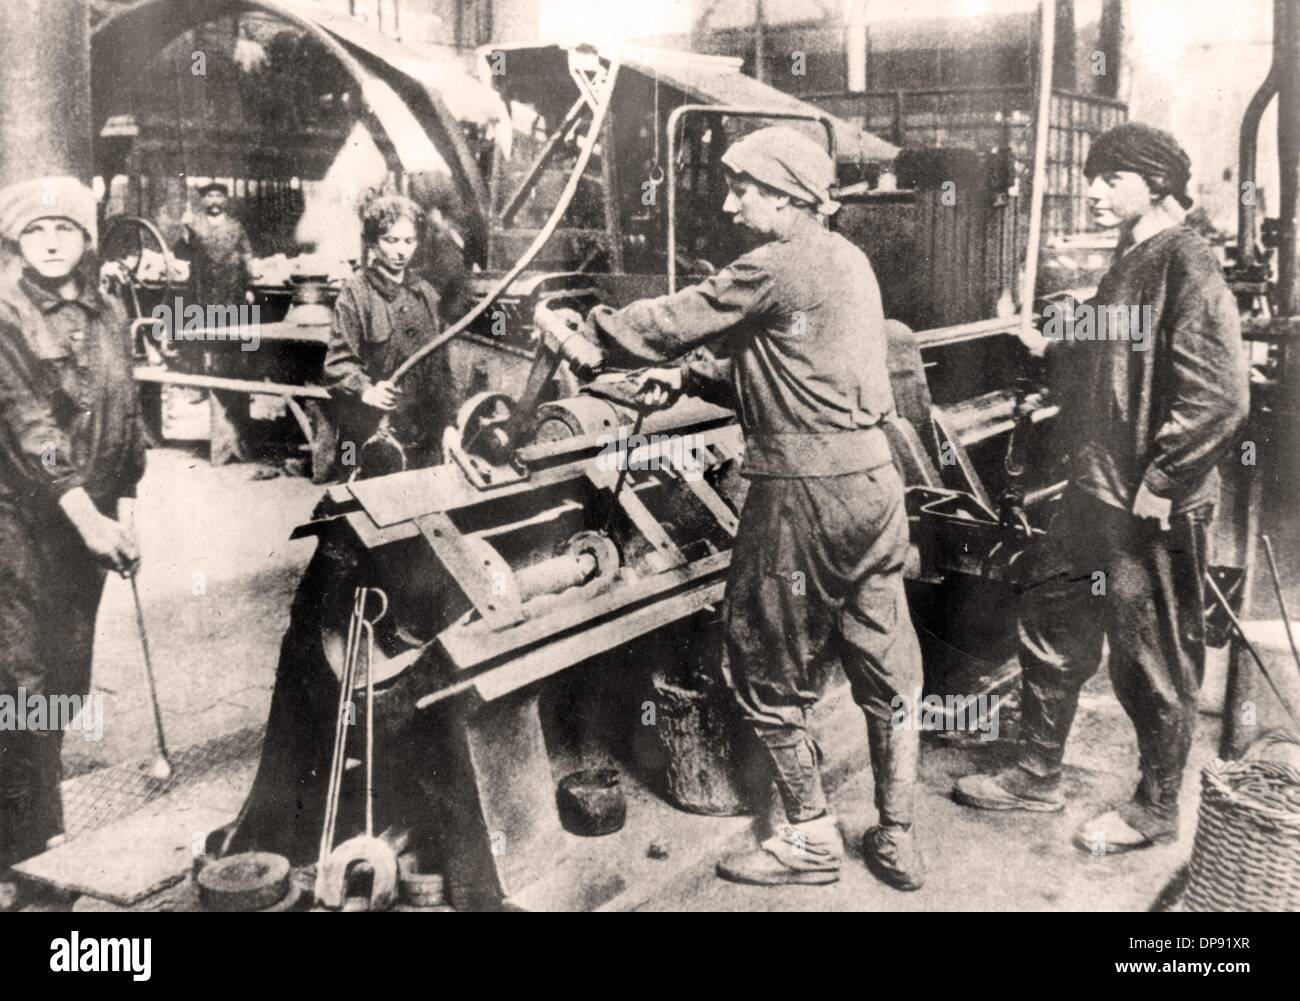 Las mujeres trabajan en una fábrica de municiones en una prensa de dibujo de 125 toneladas, lugar y fecha desconocidos. Archivo fotográfico für Zeitgeschichte Foto de stock